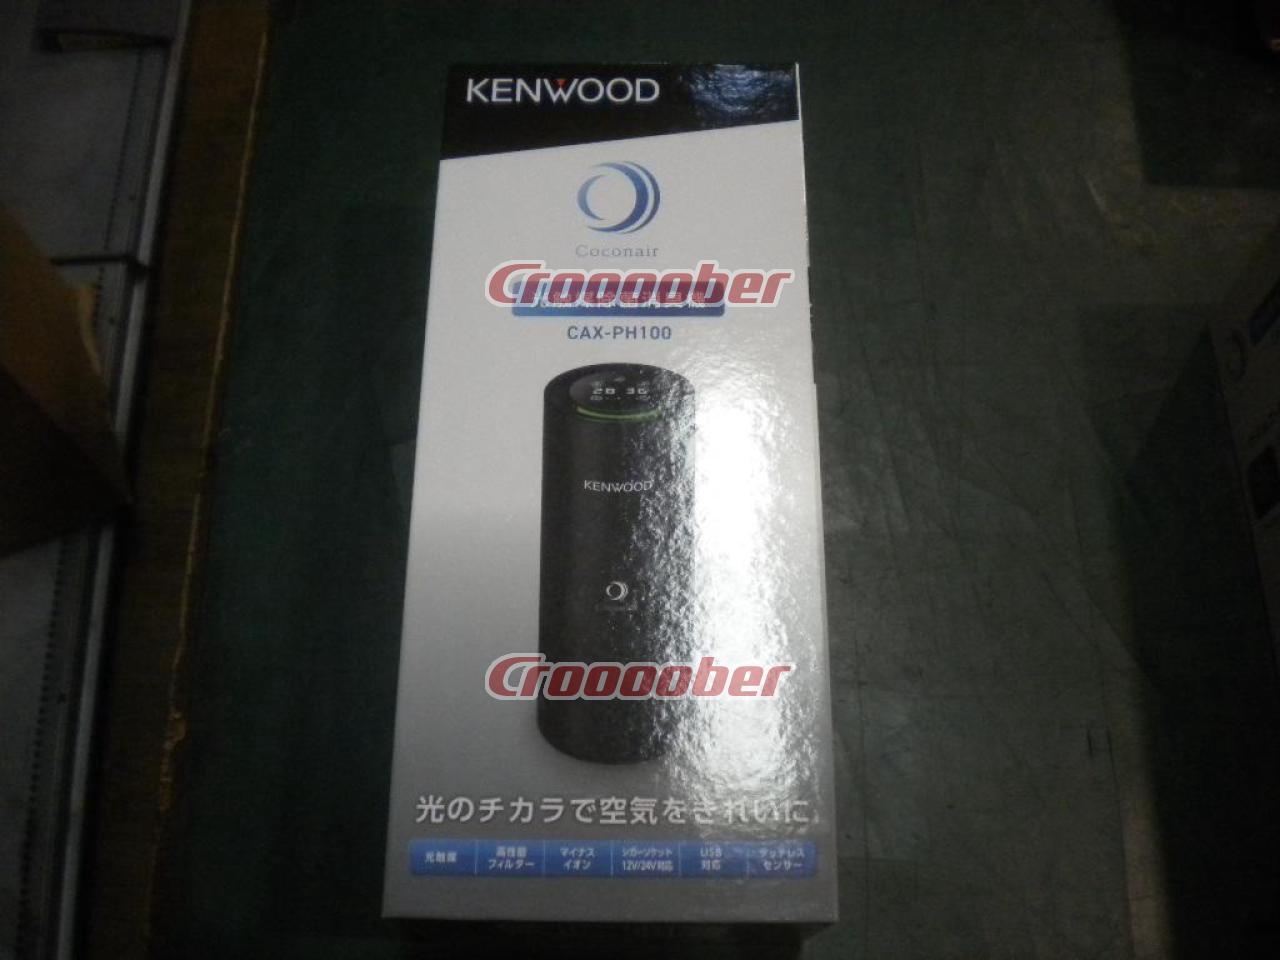 ケンウッド(Kenwood) 光触媒 除菌消臭機 12V 24V車対応 ドリンクホルダー設置タイプ USB-A対応 タッチレスセンサー CAX-PH100 ブラック - 4